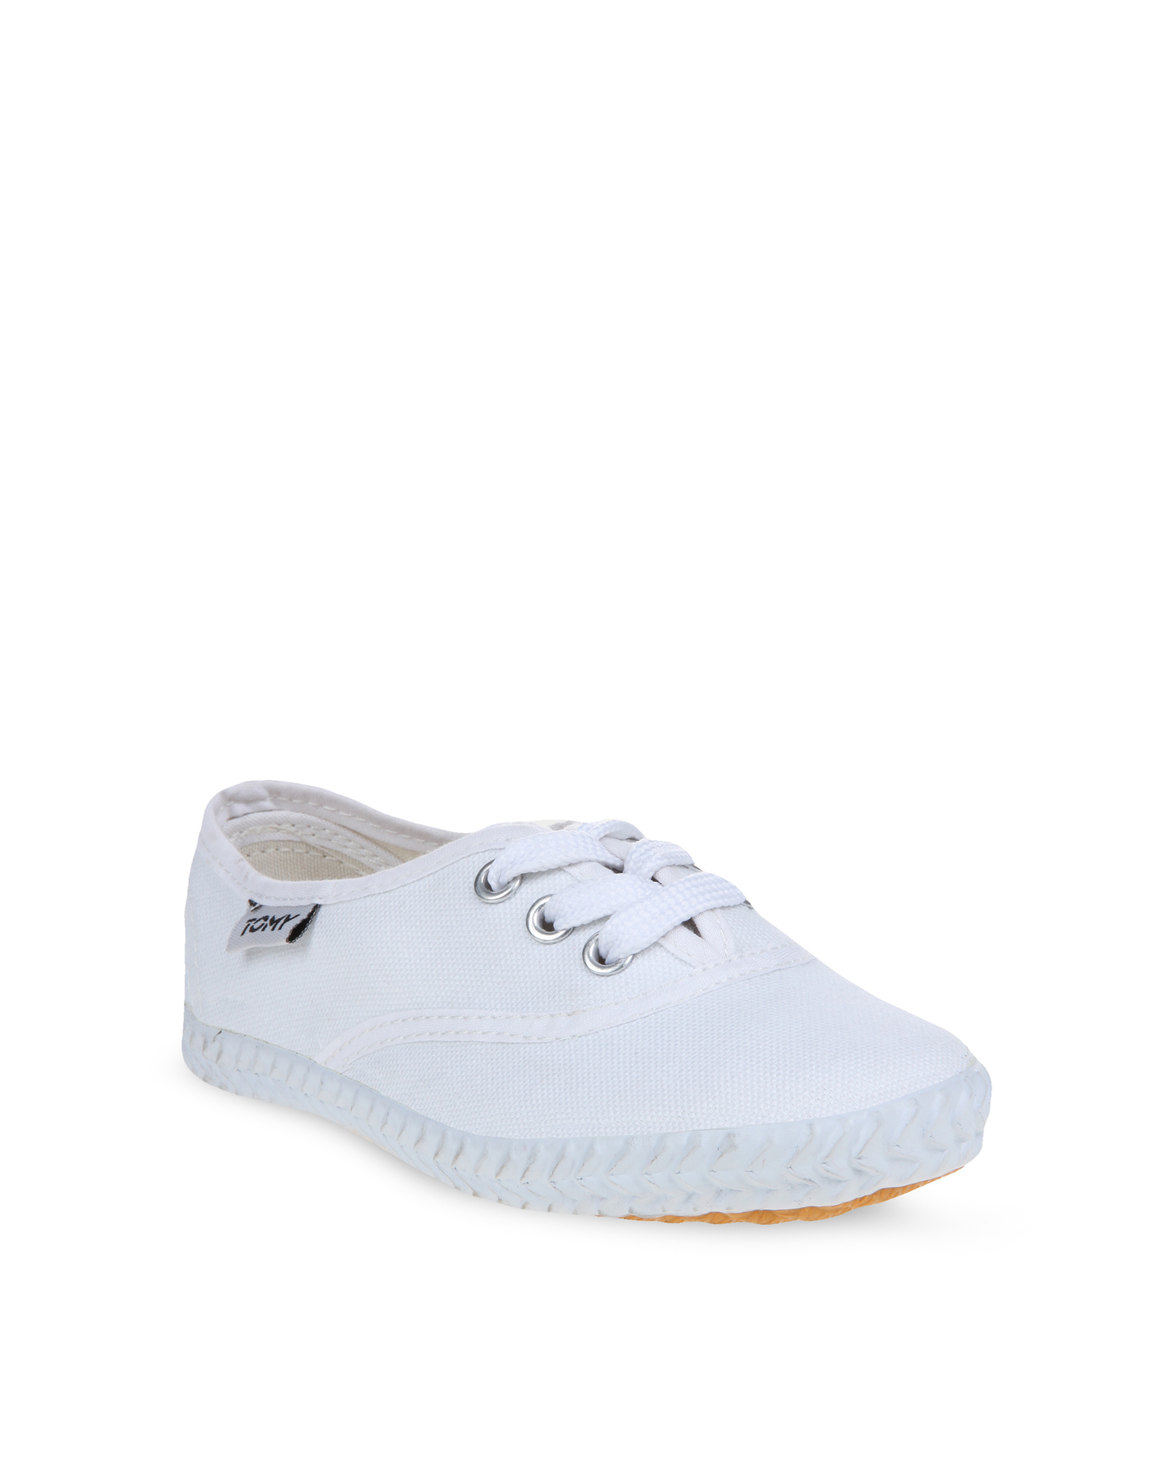 Tomy Canvas Sneakers White | Zando